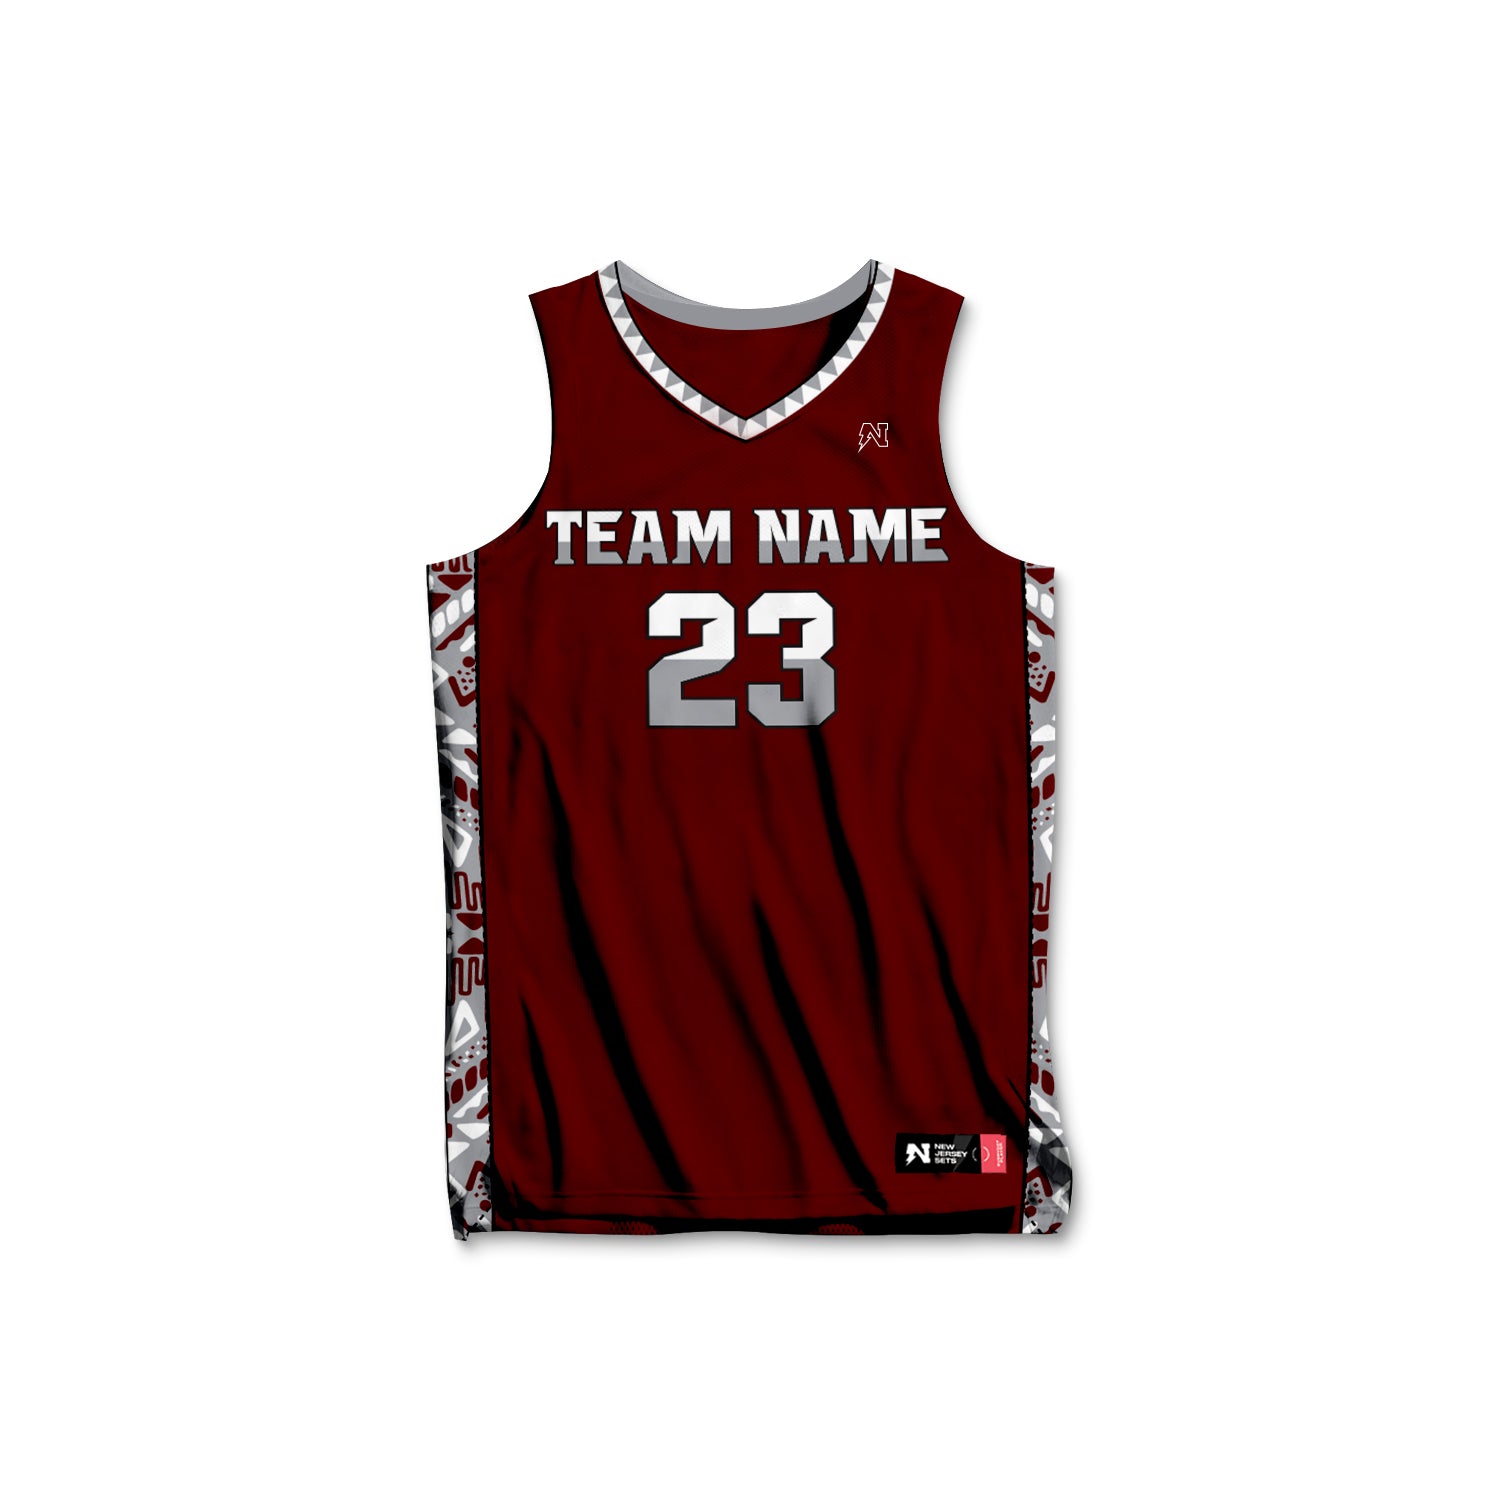 New jersey design. R.L. - R. L. Basketball Jersey qatar